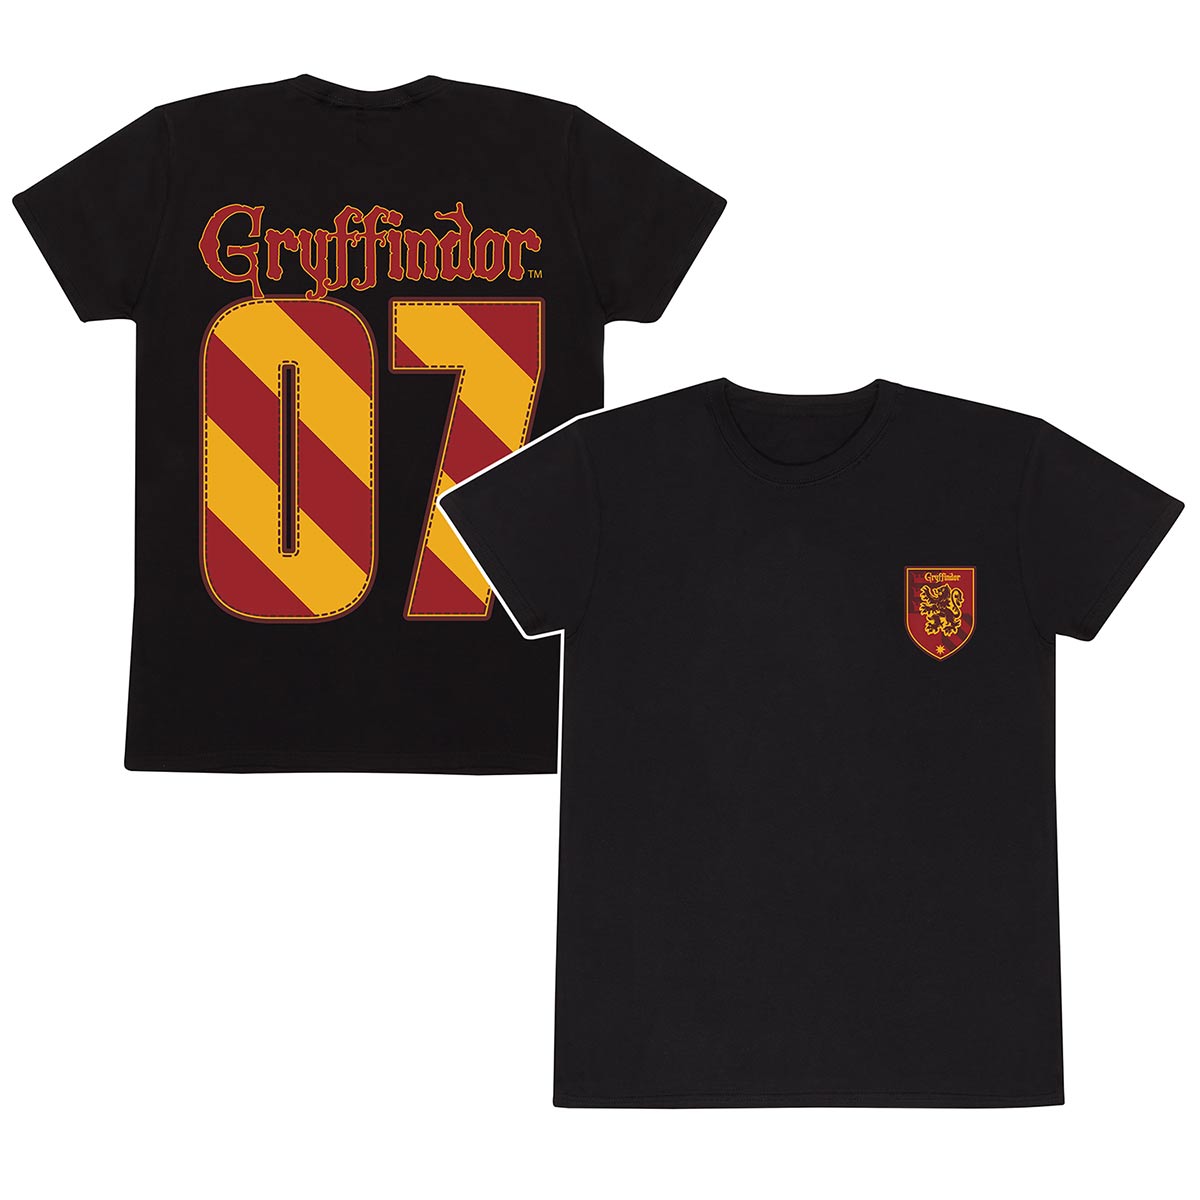 Harry Potter – Quidditch Gryffindor T-Shirt - Men's/Unisex